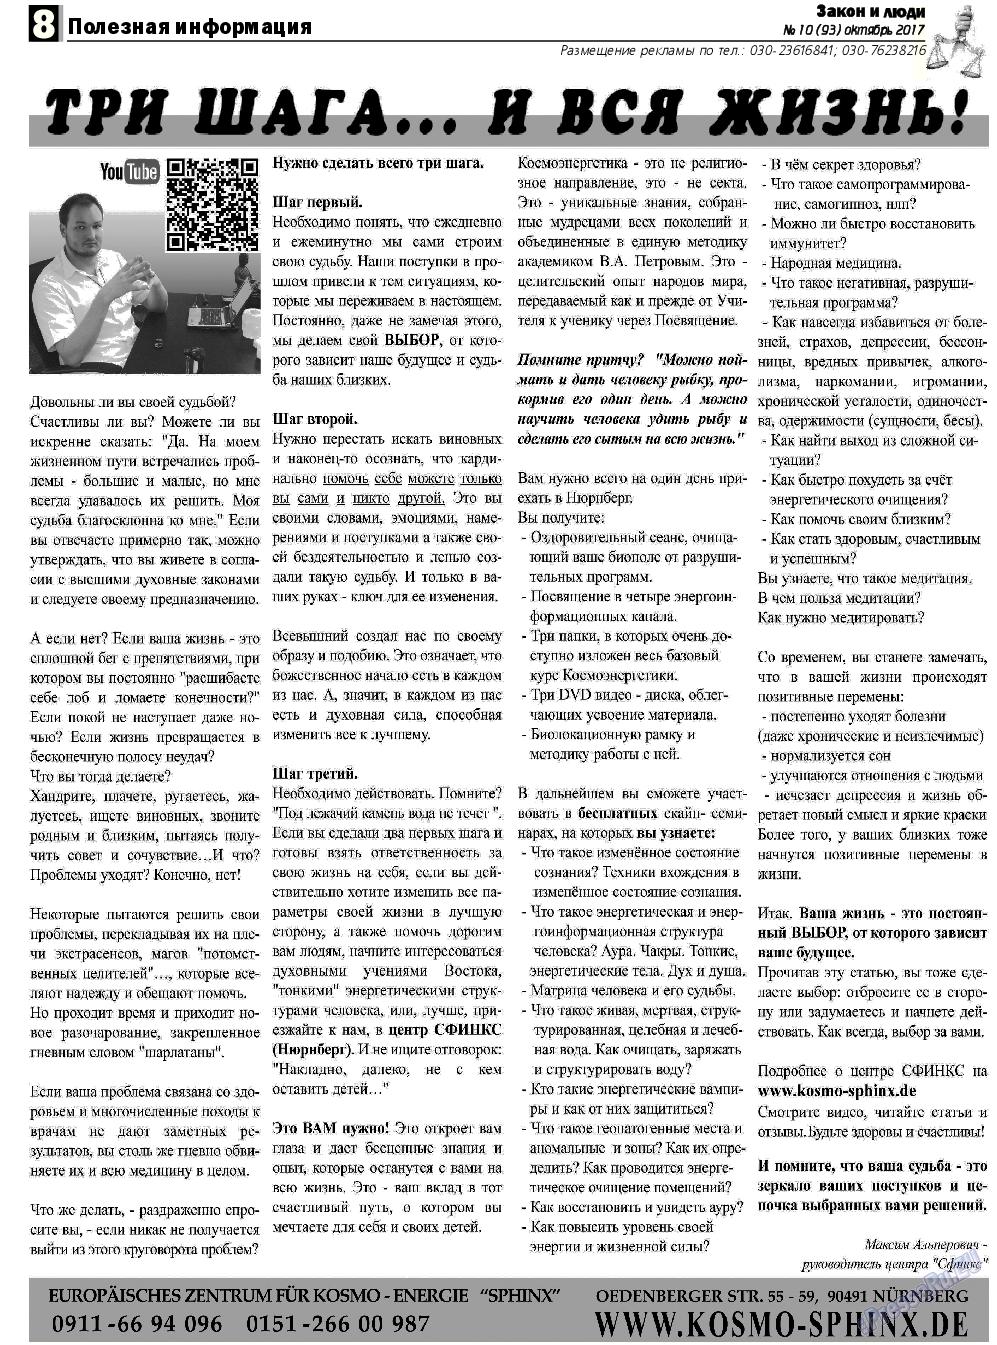 Закон и люди, газета. 2017 №10 стр.8